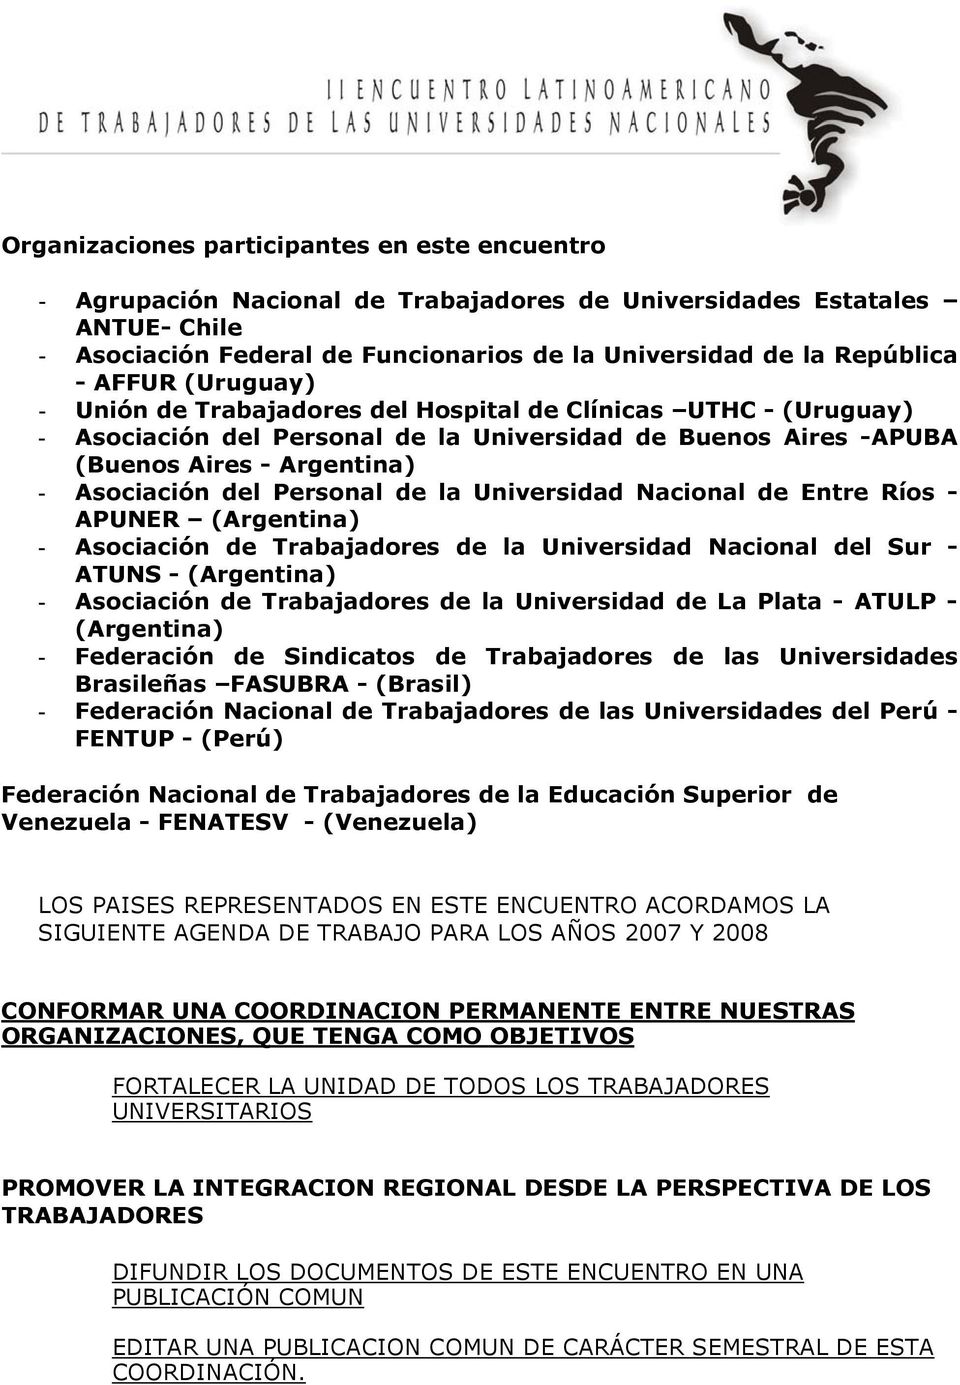 Personal de la Universidad Nacional de Entre Ríos - APUNER (Argentina) - Asociación de Trabajadores de la Universidad Nacional del Sur - ATUNS - (Argentina) - Asociación de Trabajadores de la